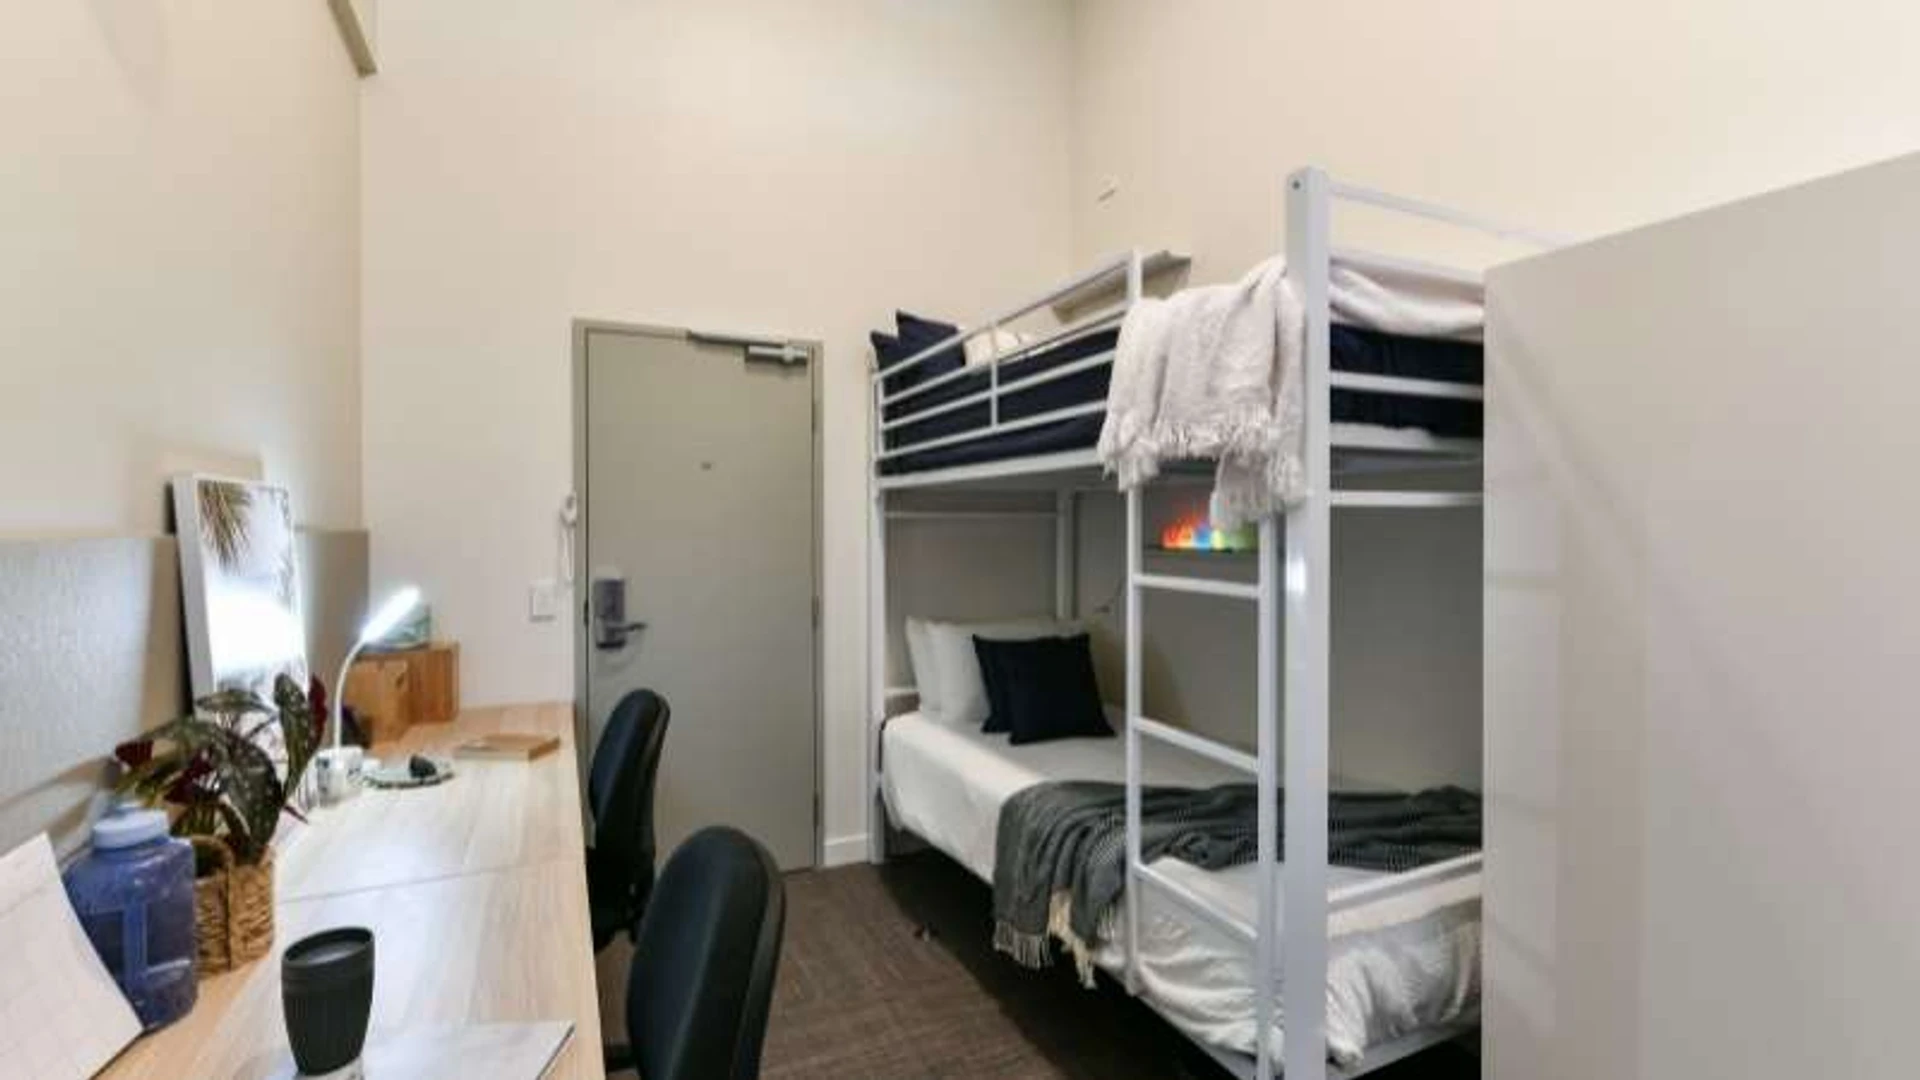 Wspólny pokój z innym studentem w Brisbane